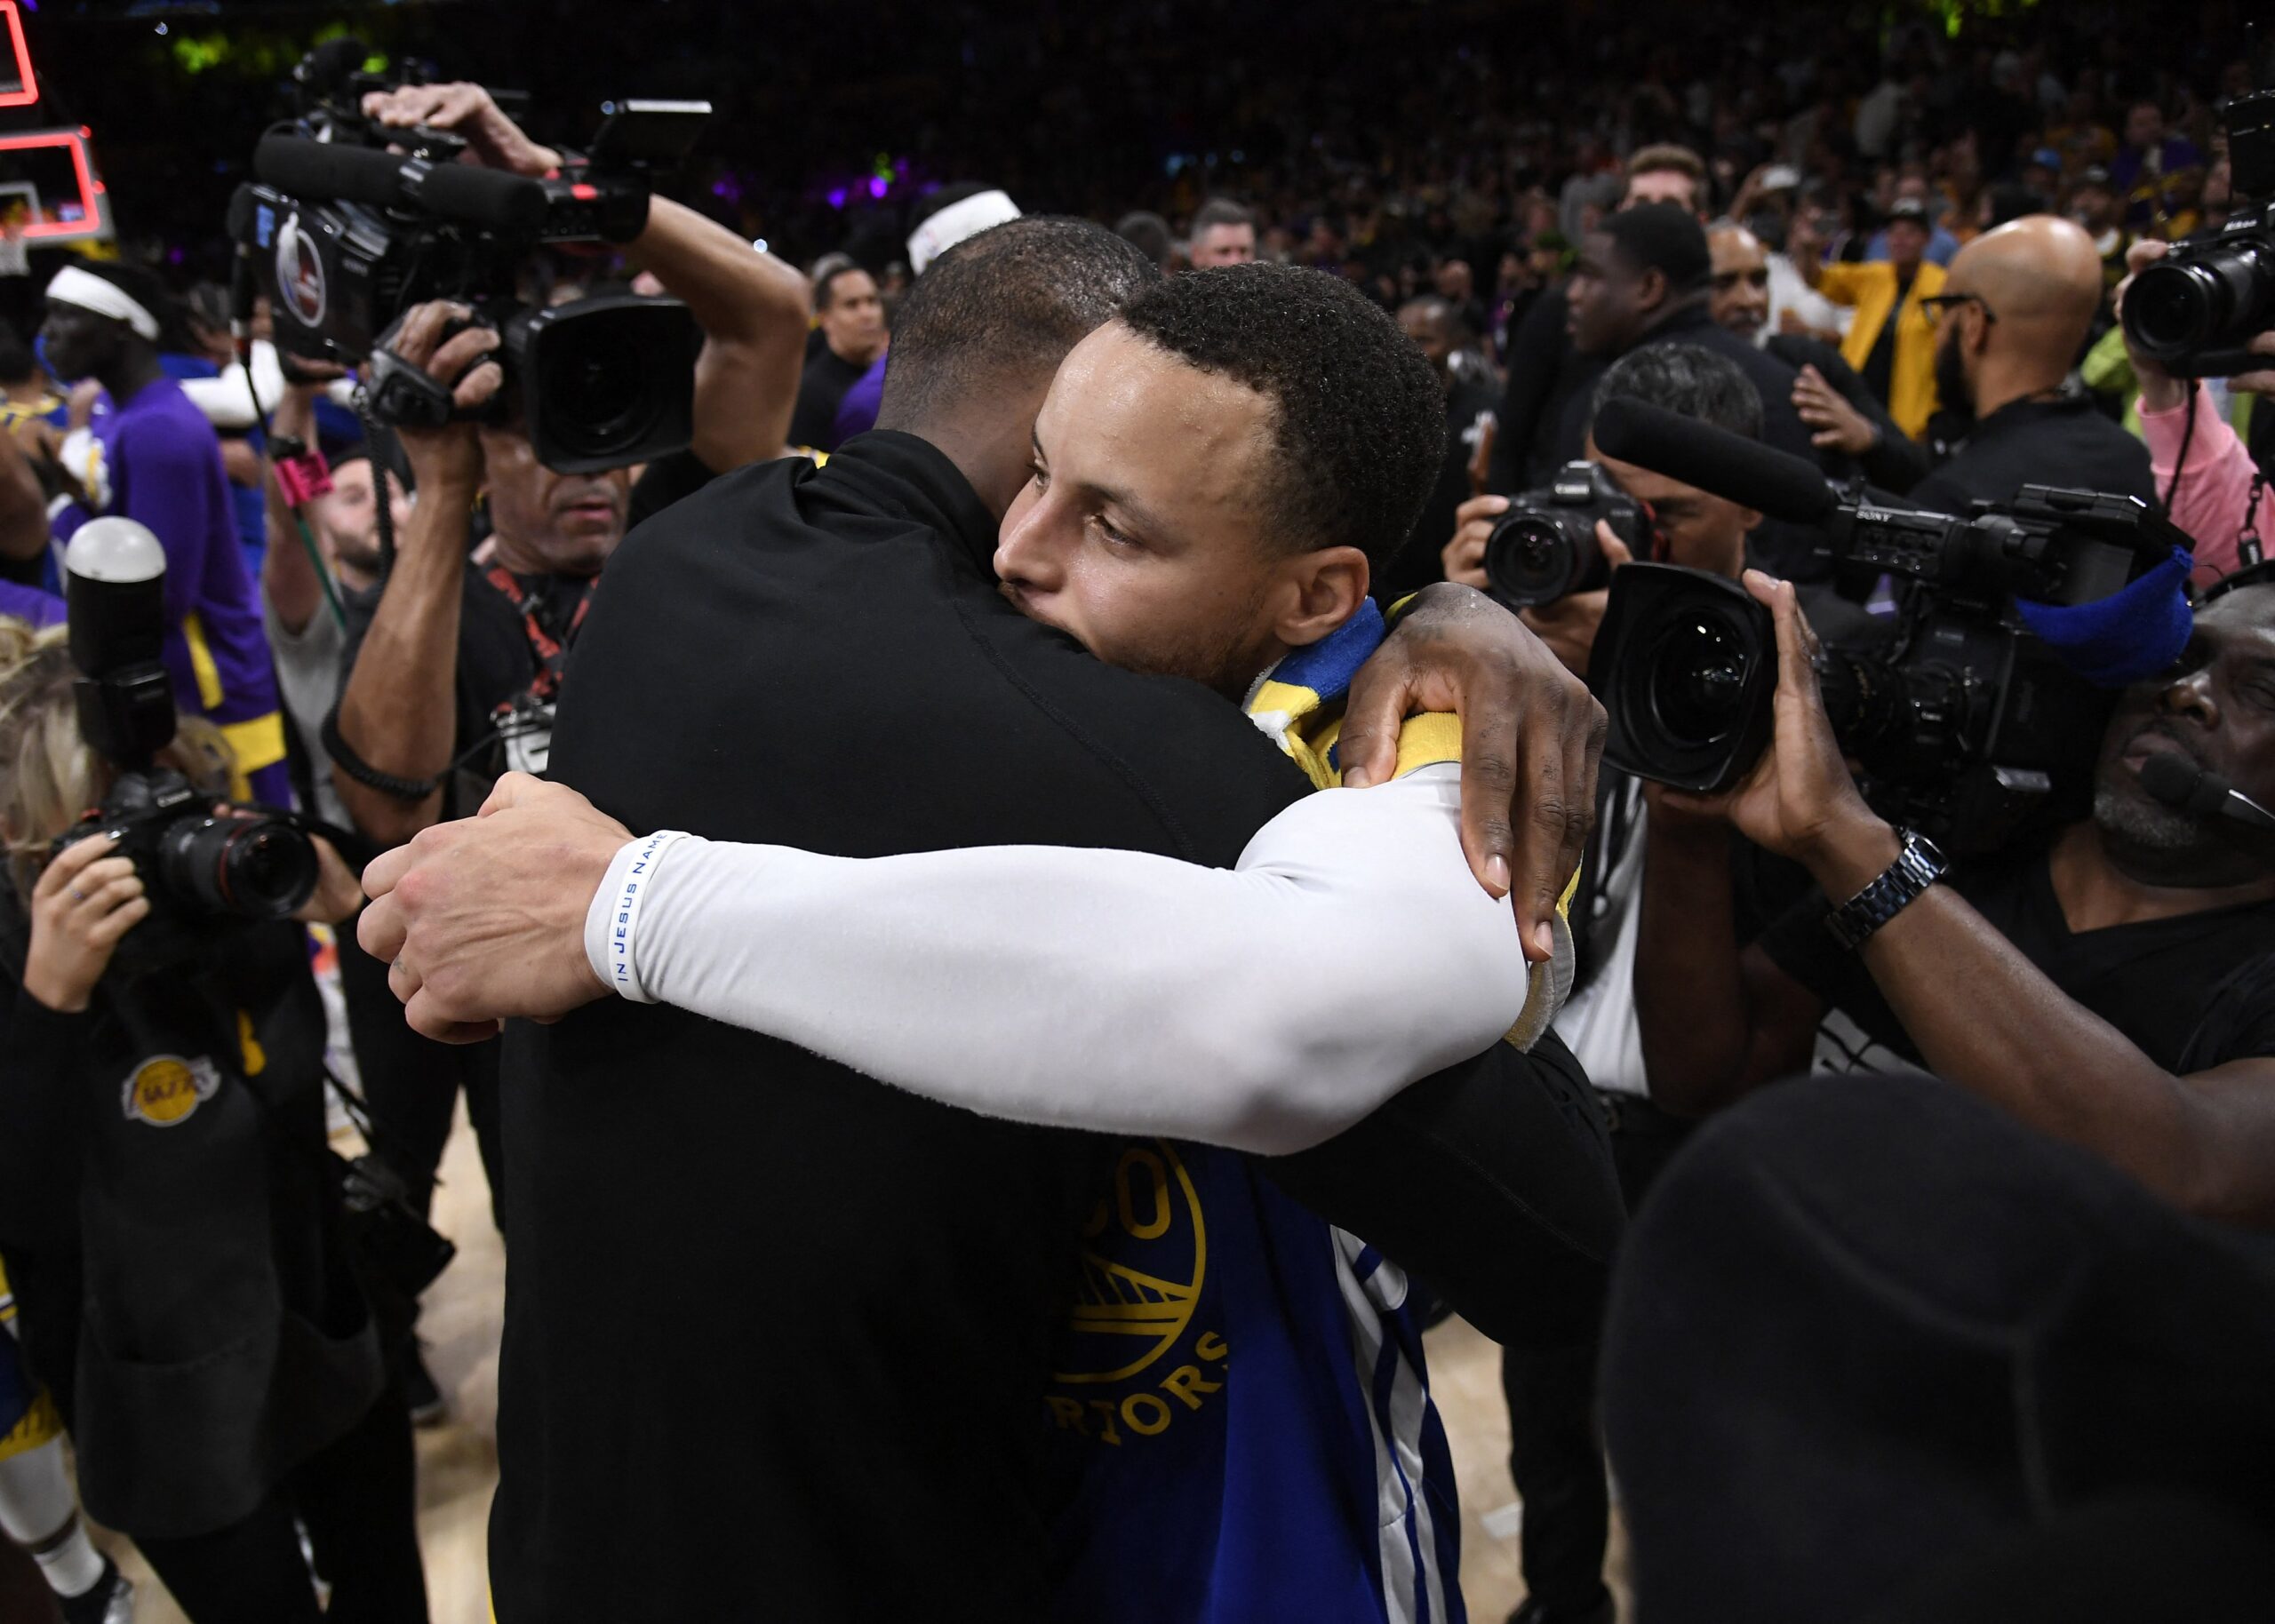 La giusta fine di un altro capitolo della storia recente NBA: l'abbraccio tra i due sfidanti